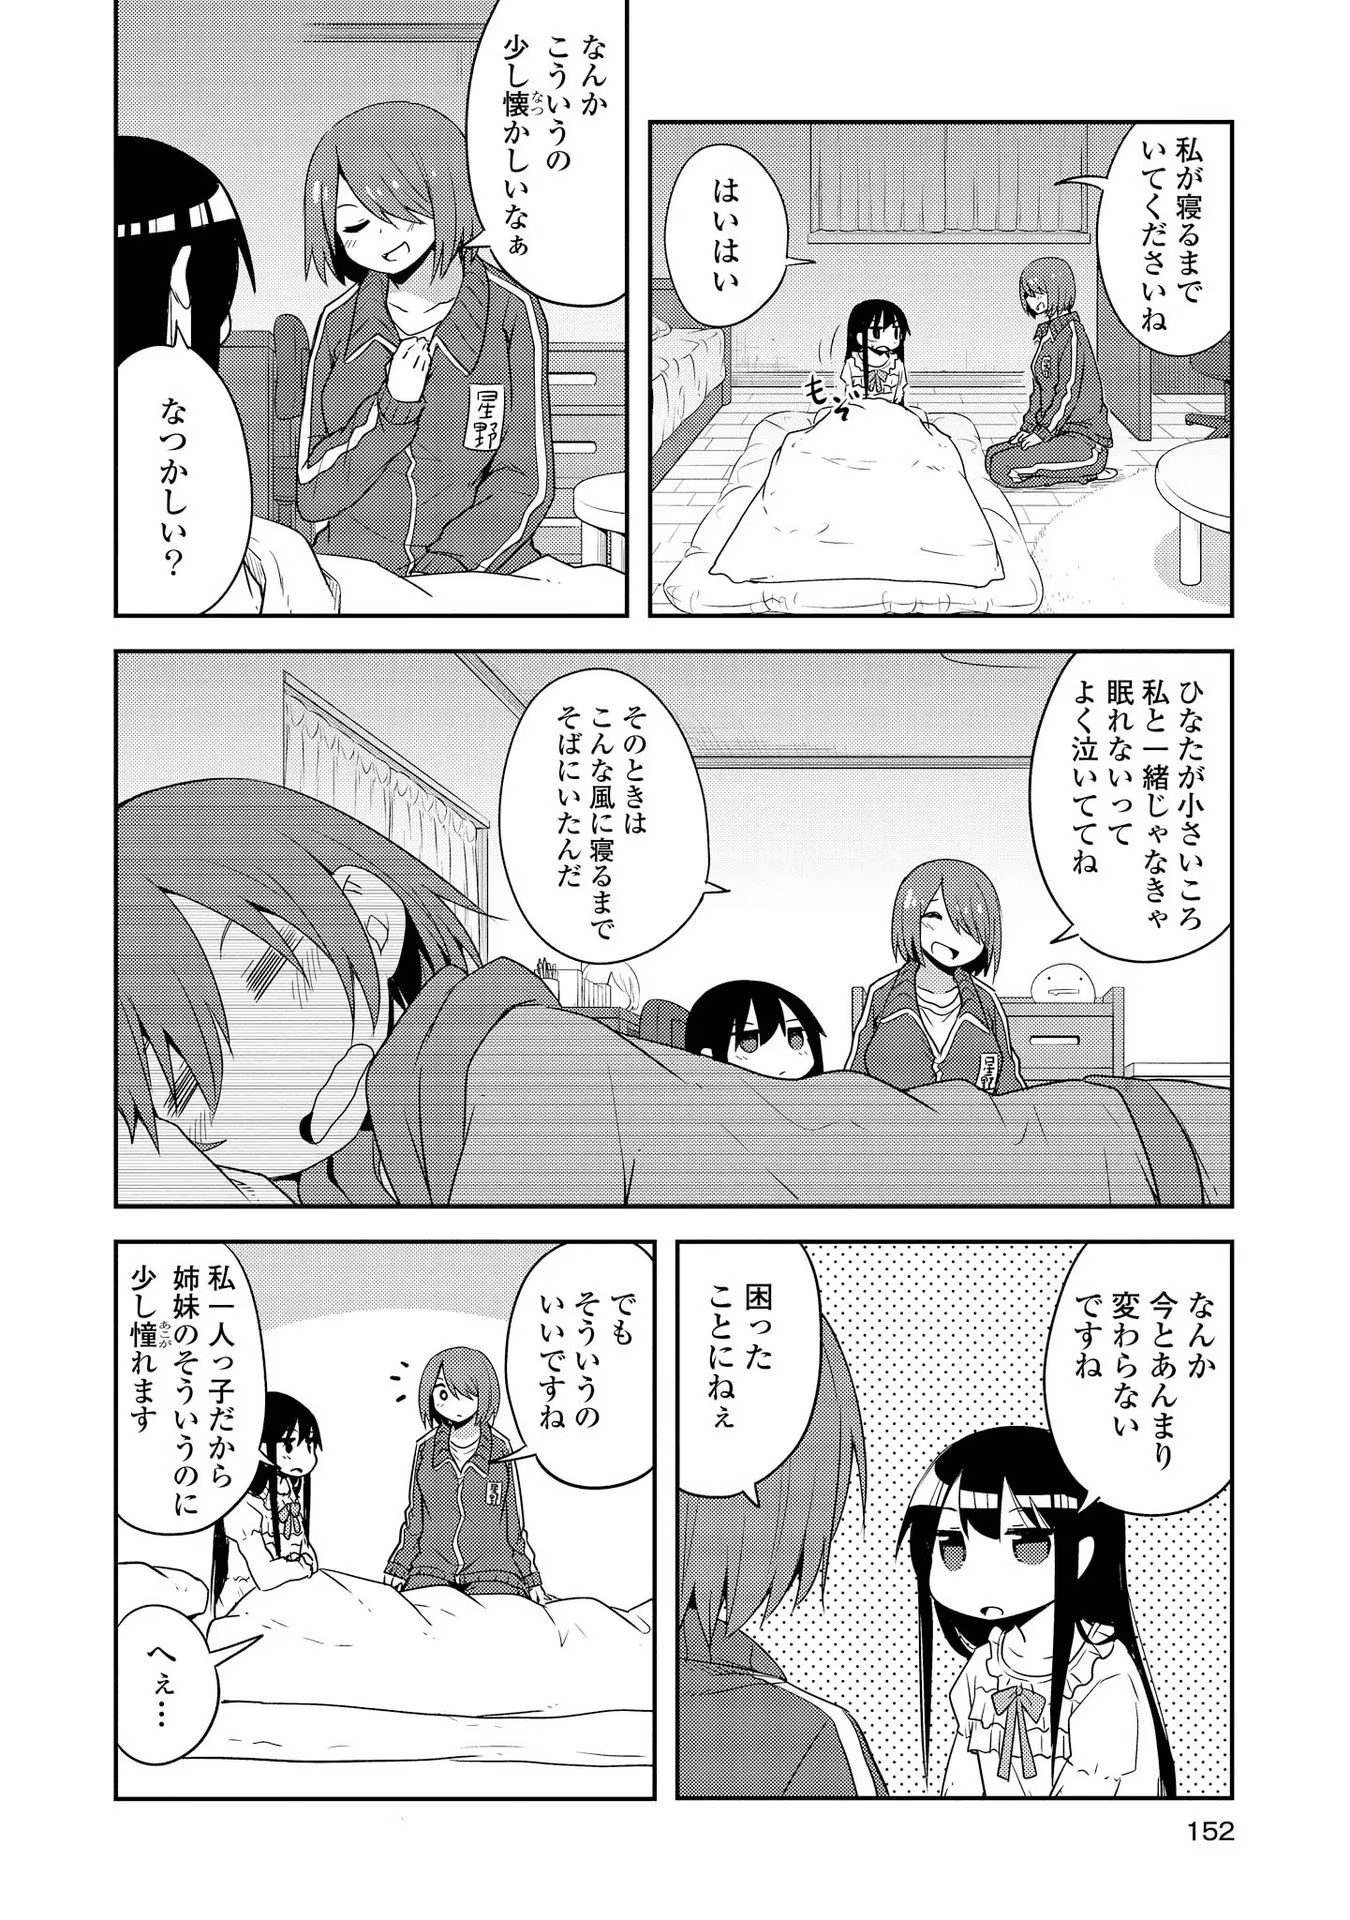 Watashi ni Tenshi ga Maiorita! - Chapter 29 - Page 18